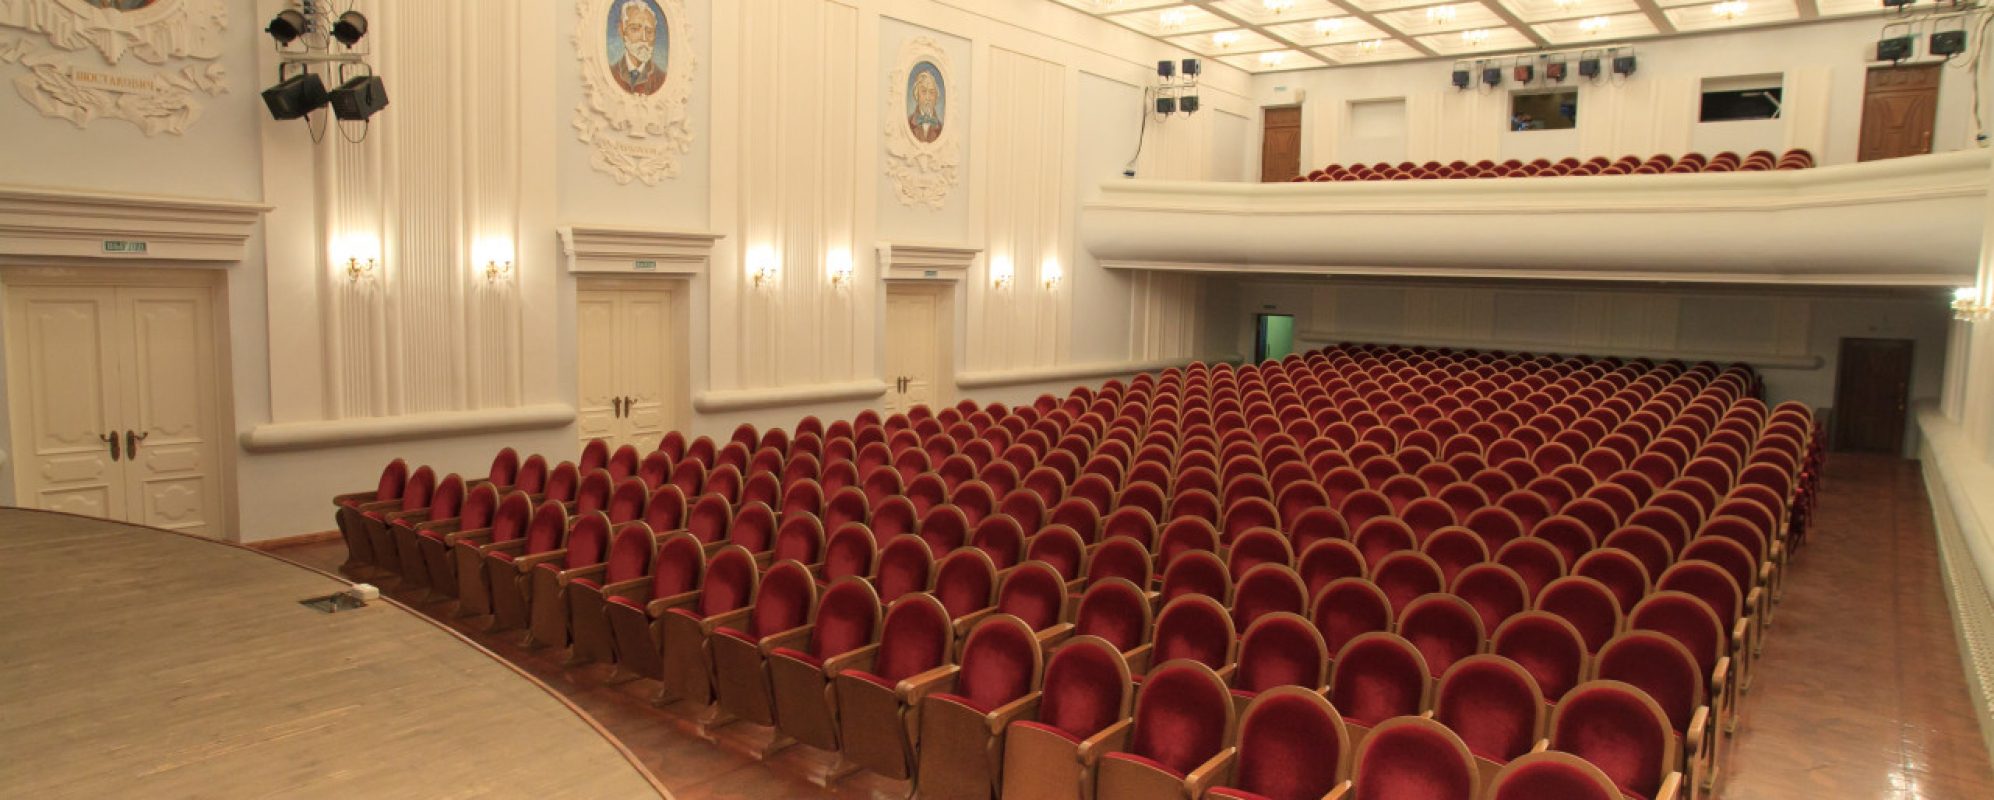 Фотографии концертного зала Большой зал Государственной филармония Костромской области